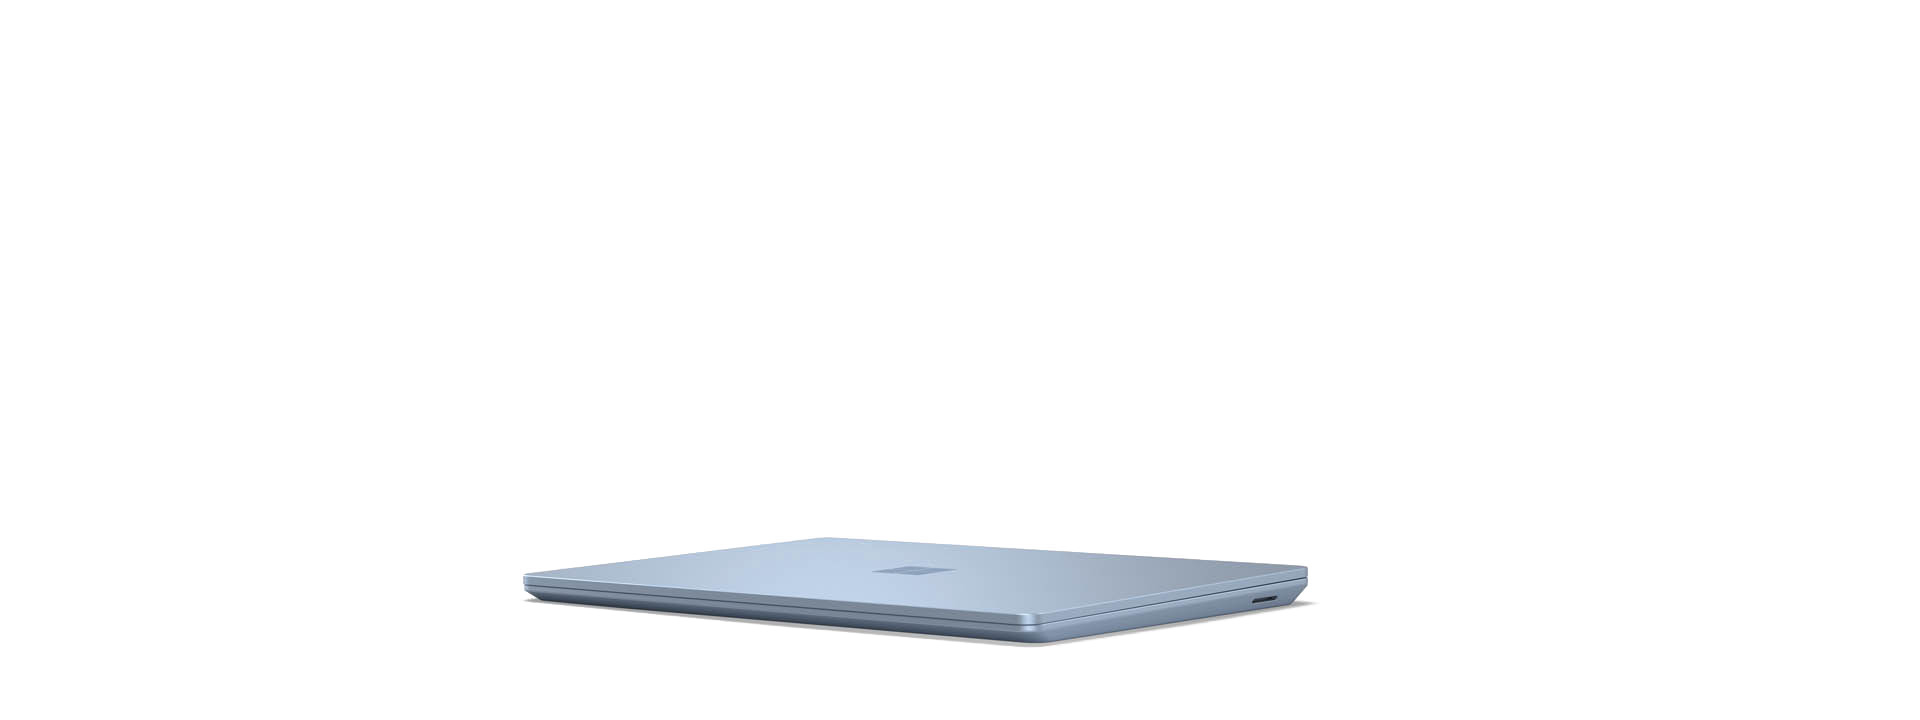 展示的 Surface Laptop Go 已闔上。